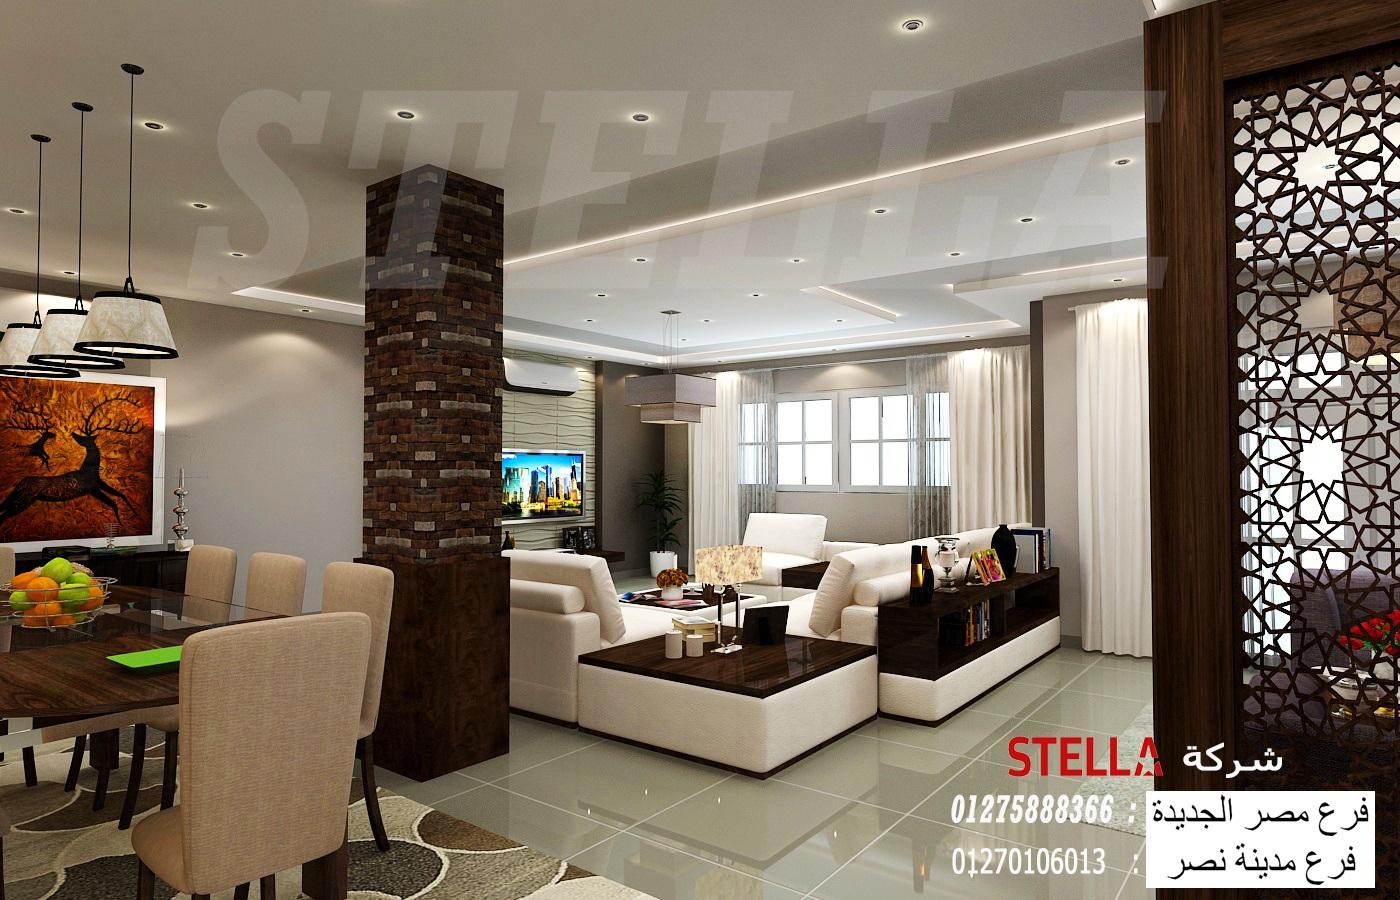 تشطيب شقق مصر / شركة ستيلا بتنقل كل تصميماتك لواقع جميل 01210044806 375355390